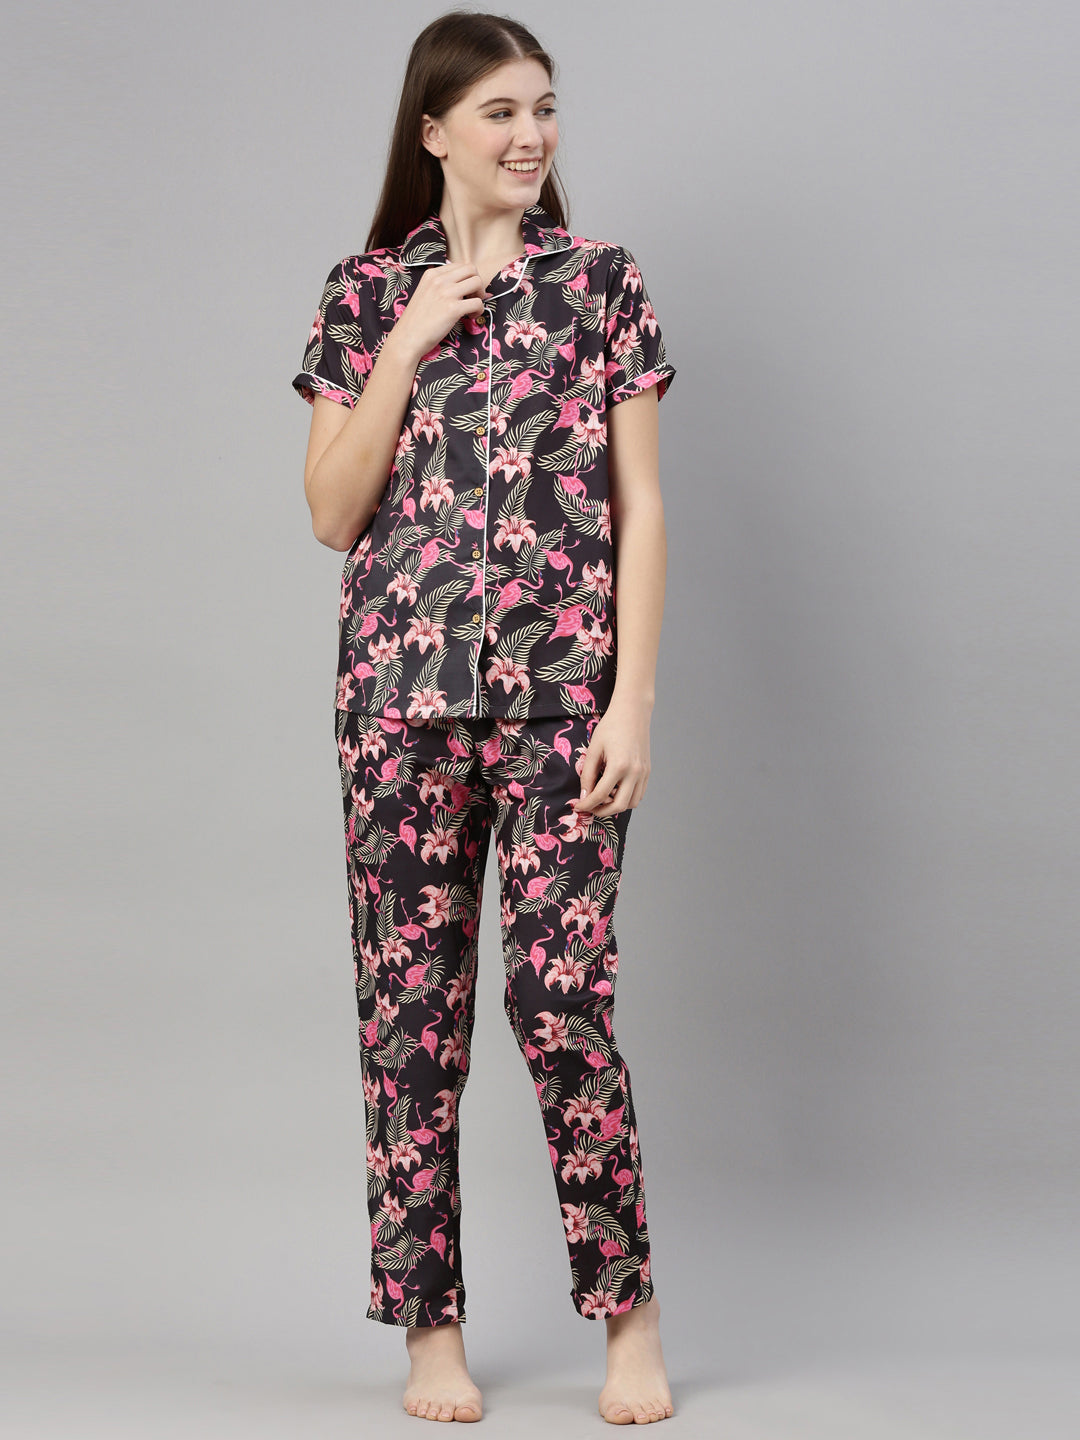 Flamingo Print Night-suit Set | Pajama set, Flamingo print, Print pajamas